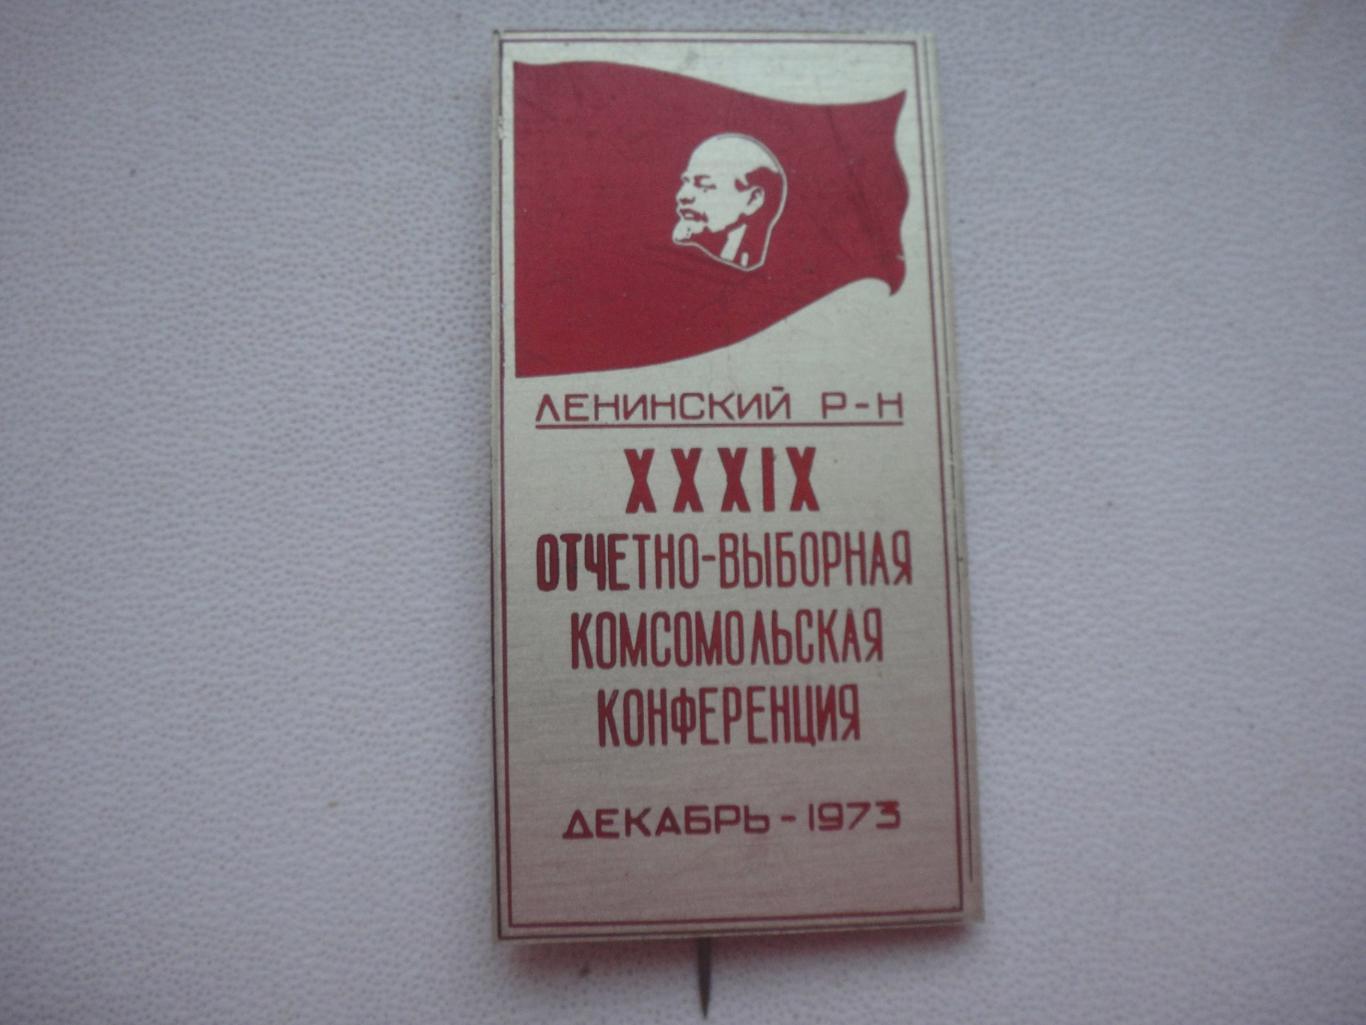 Значок XXXIX 39 Отчётно-Выборная Комсомольская Конференция ВЛКСМ *1973 г